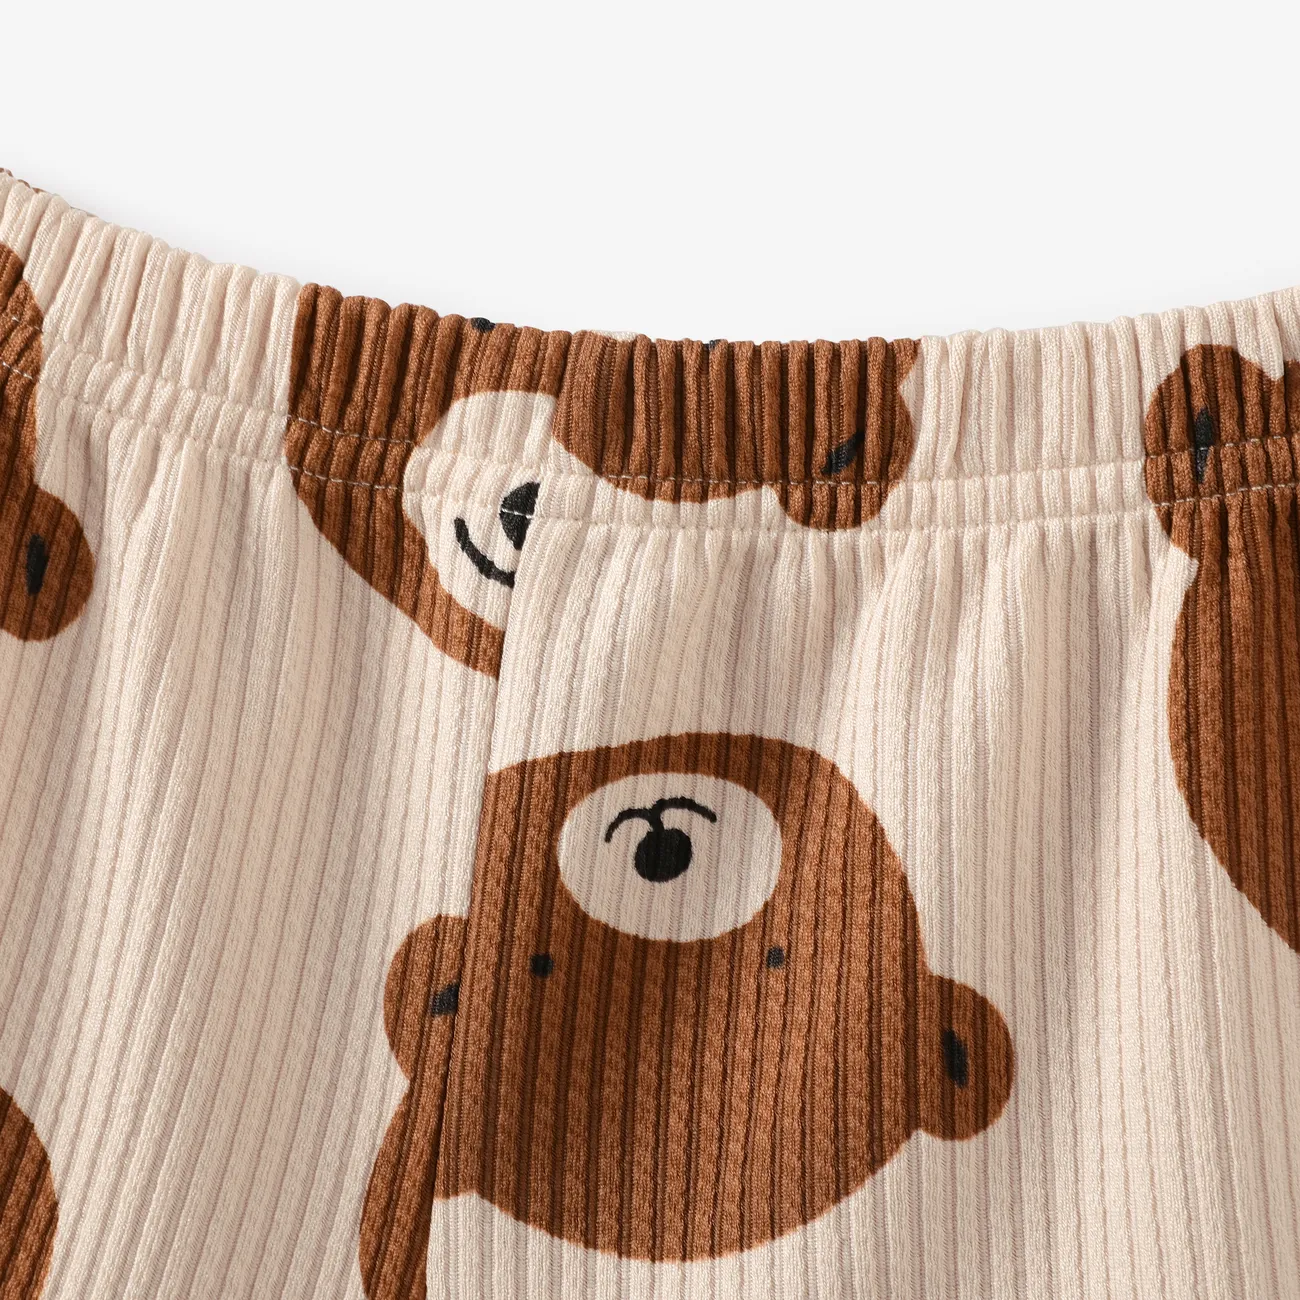 2pcs Baby Boy/Girl Ribbed Short-sleeve All Over Cartoon Bear Print Top and Shorts Set Ginger big image 1